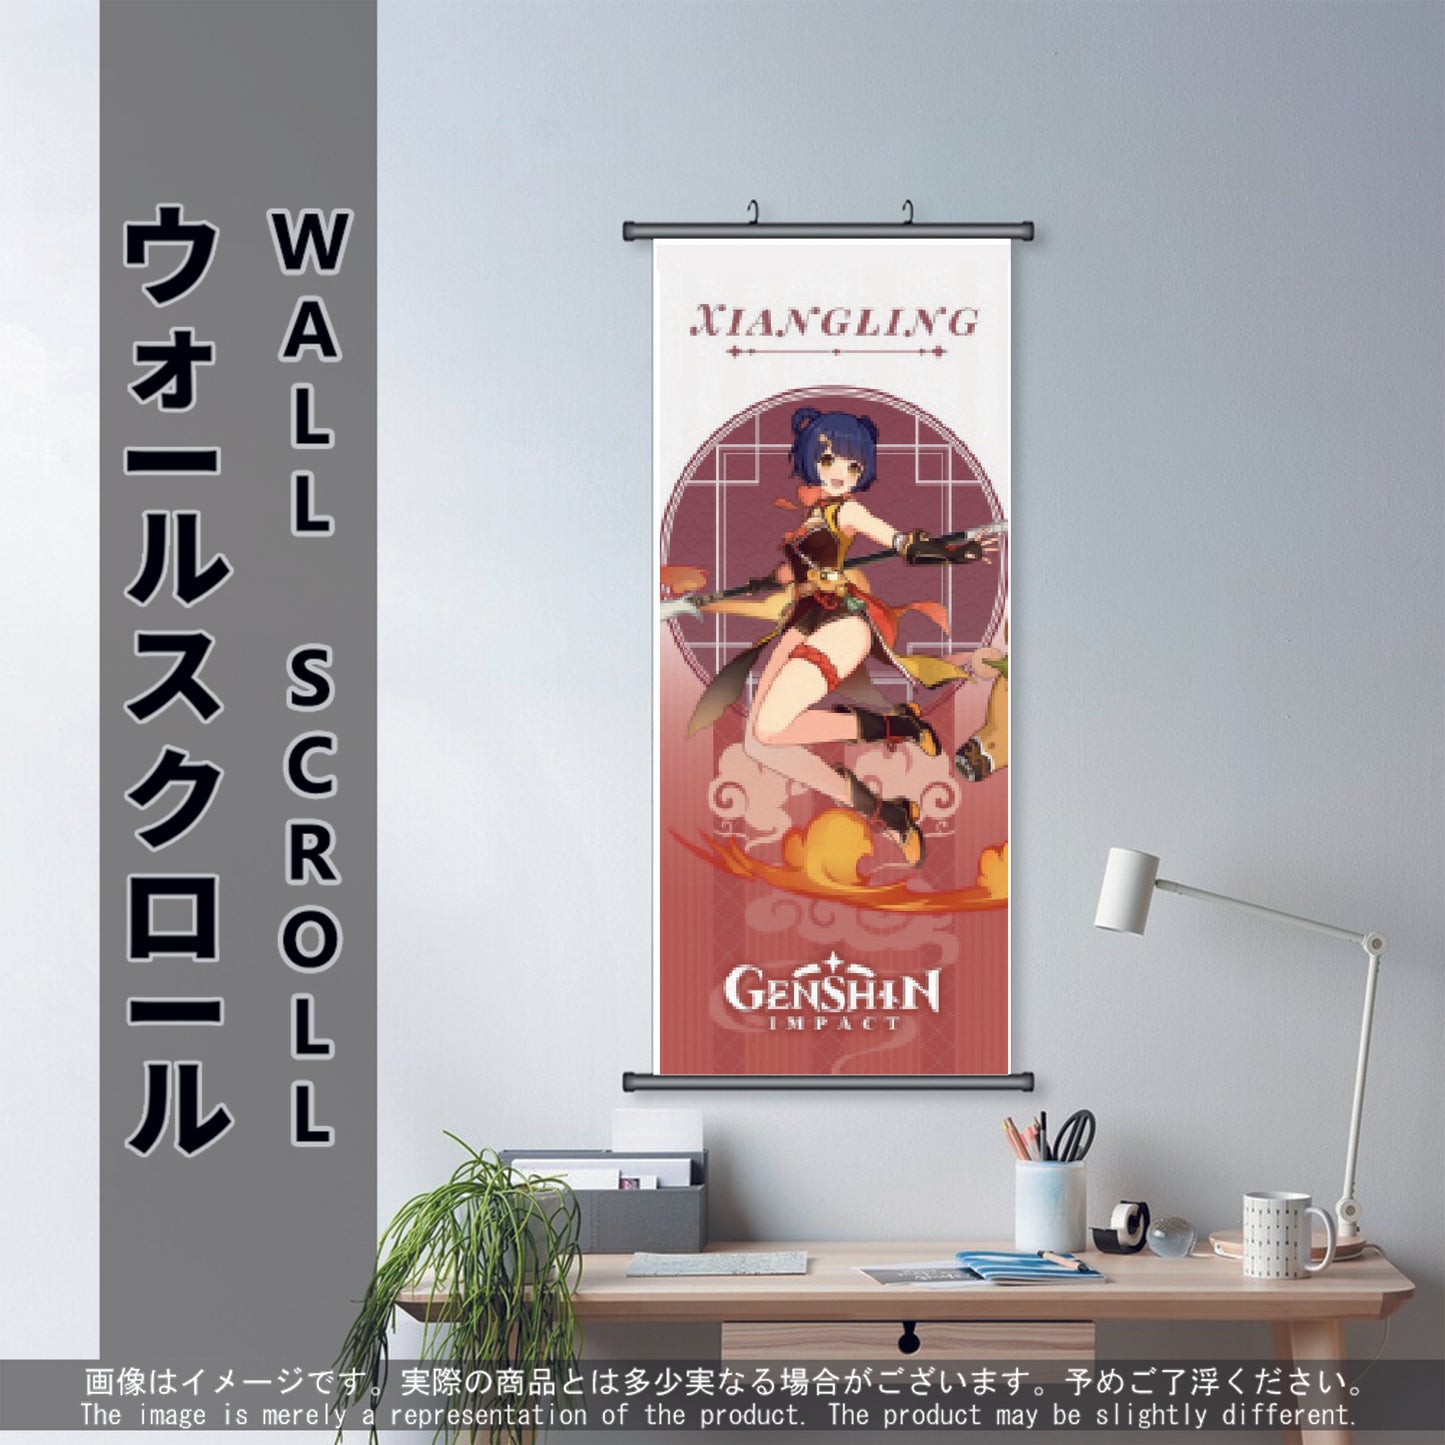 (GSN-PYRO-05) XIANGLING Genshin Impact Anime Wall Scroll